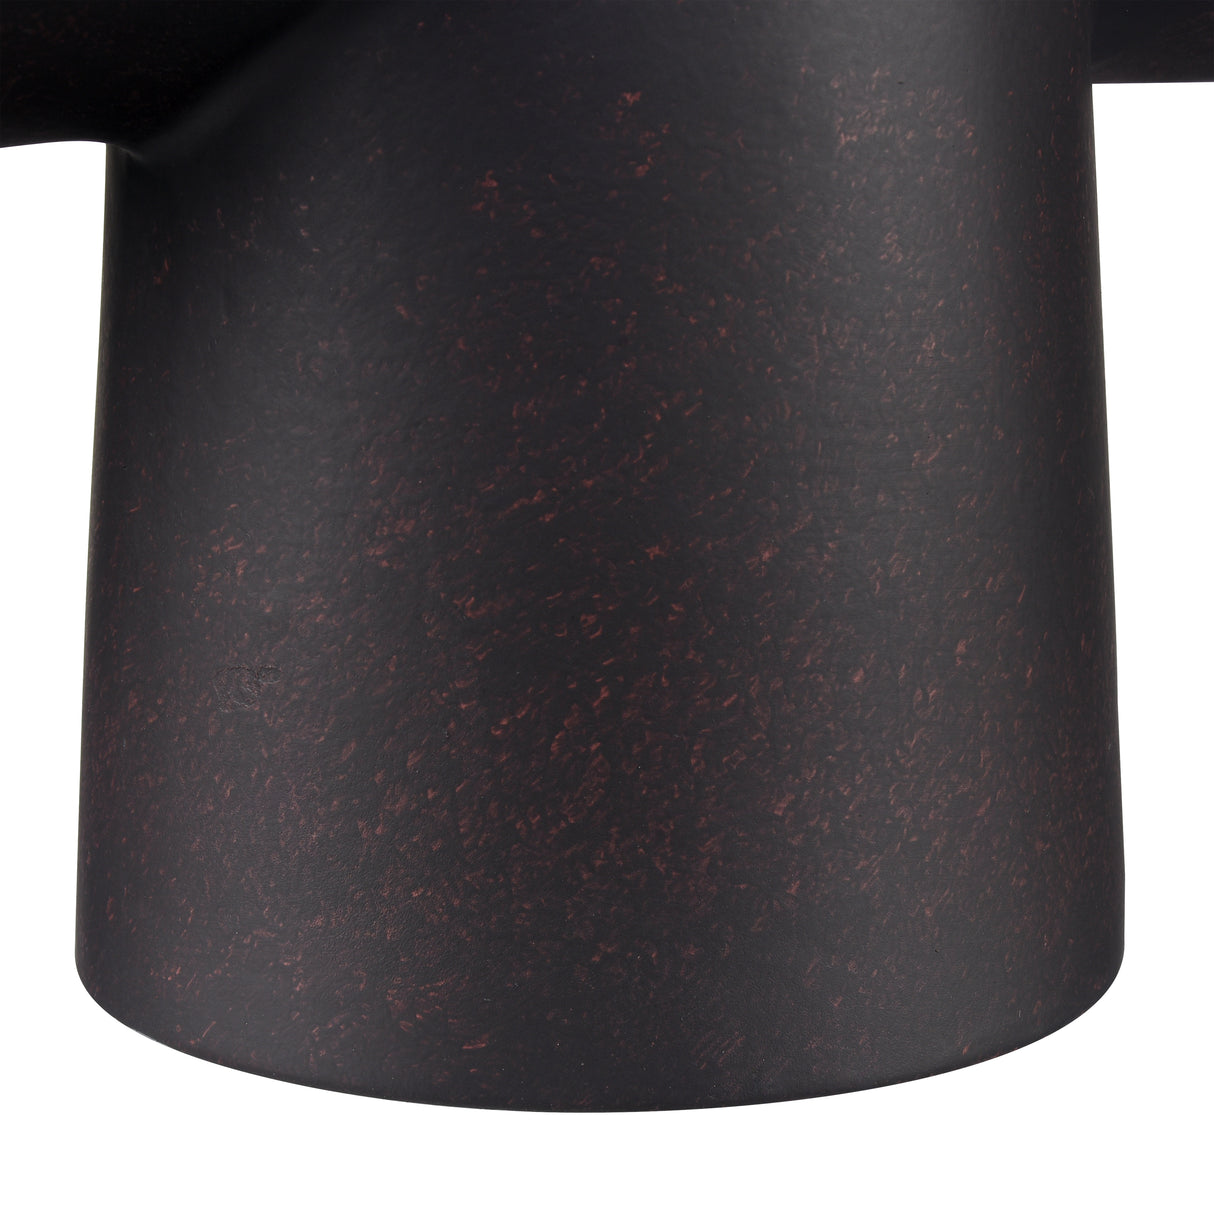 Elk H0017-10425 Hawking Vase - Small Black